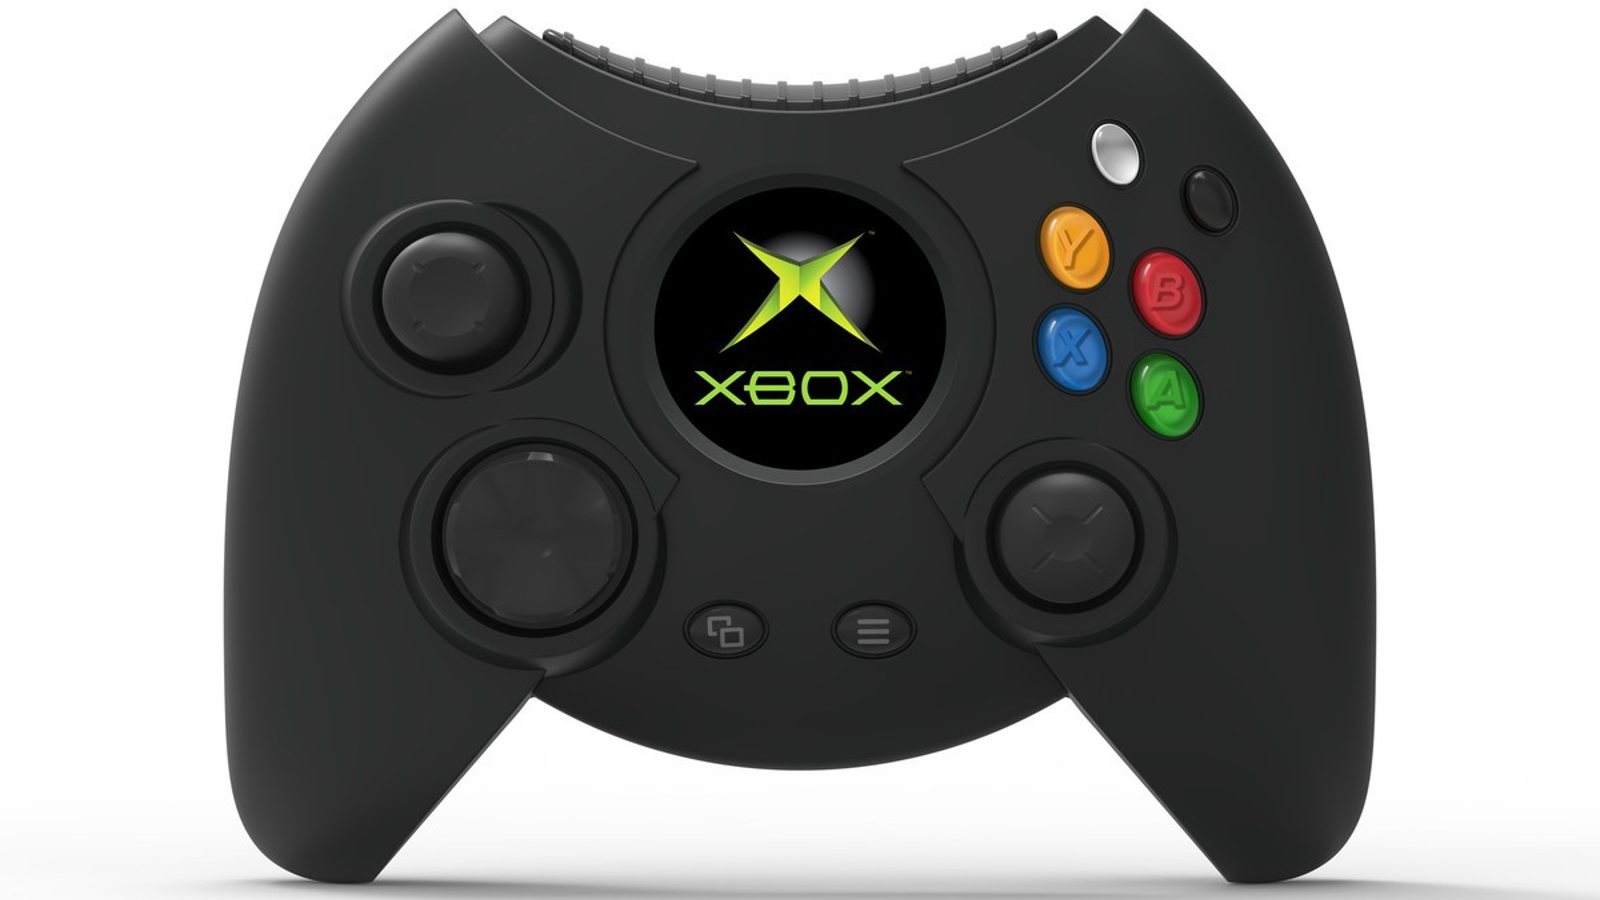 Comando-Xbox-Original---Usado